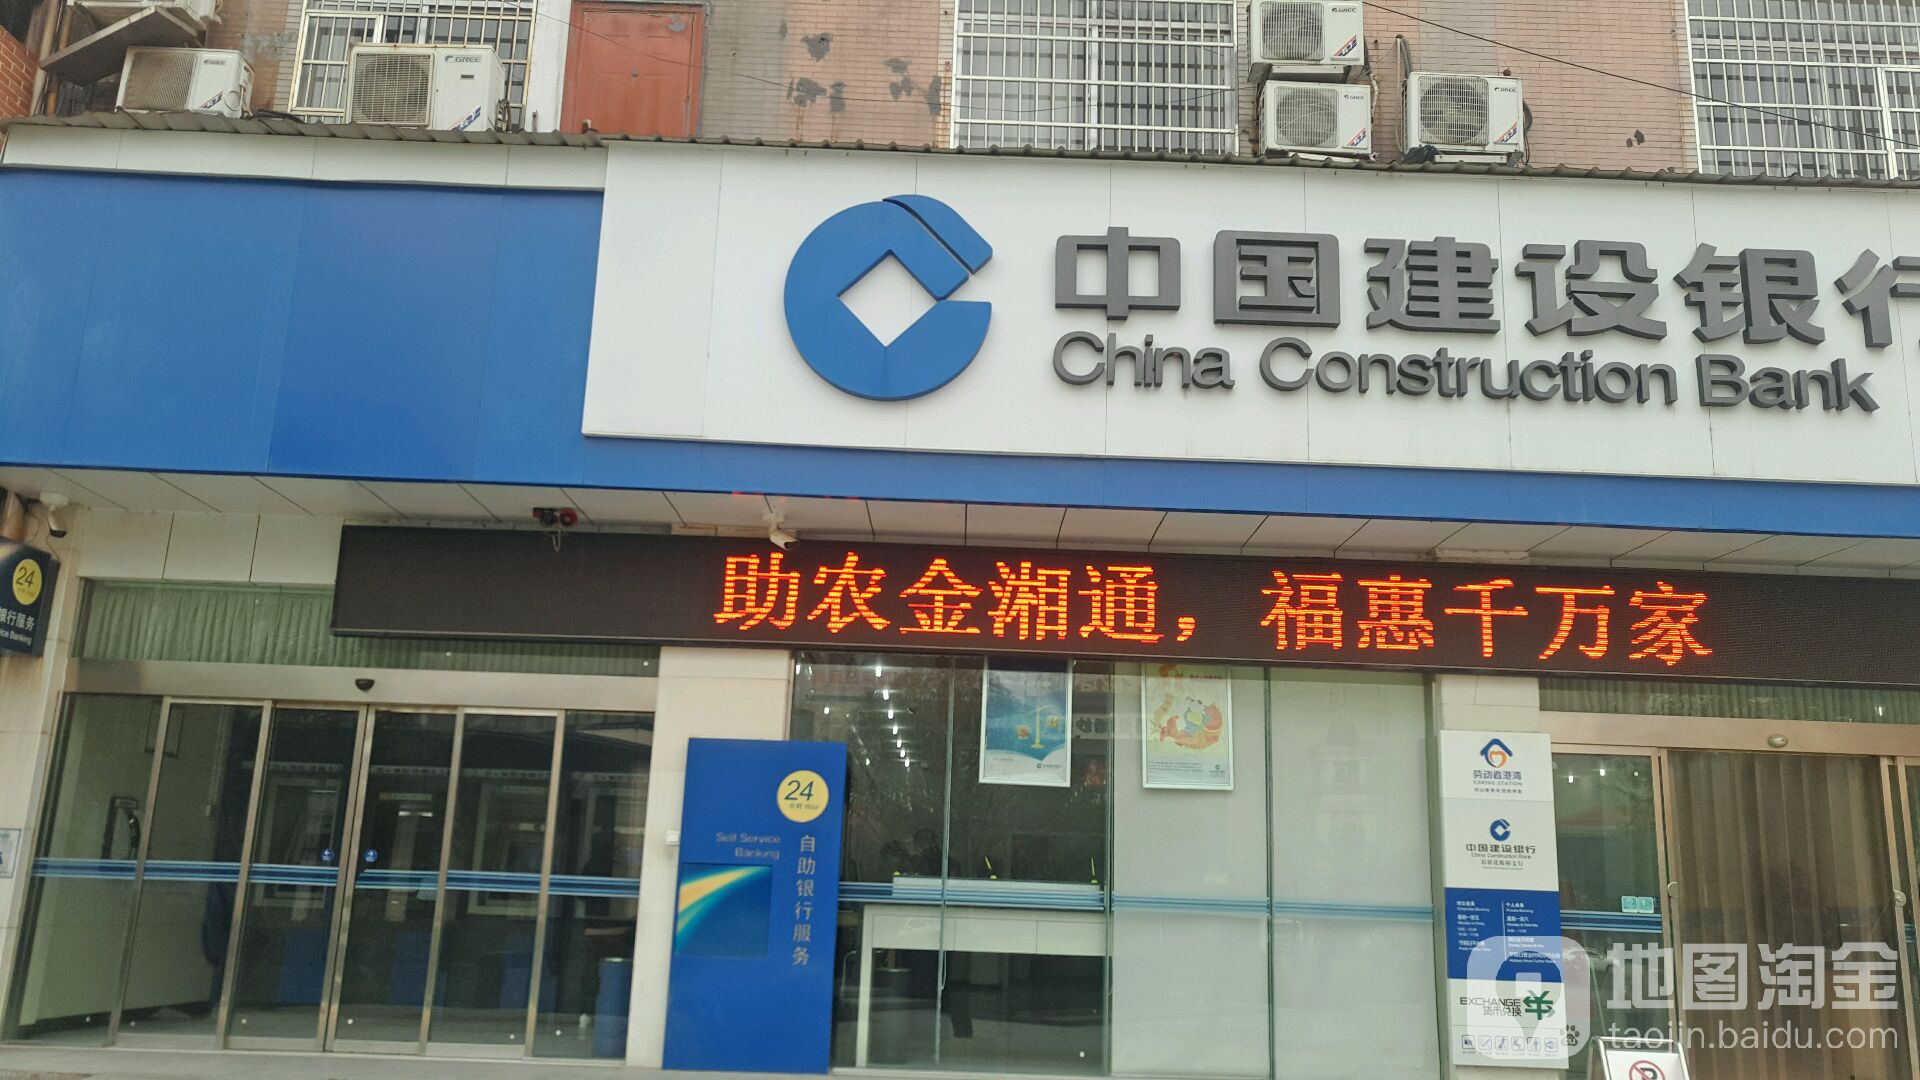 中國建設銀行24小時自助銀行(岳陽花板橋支行)